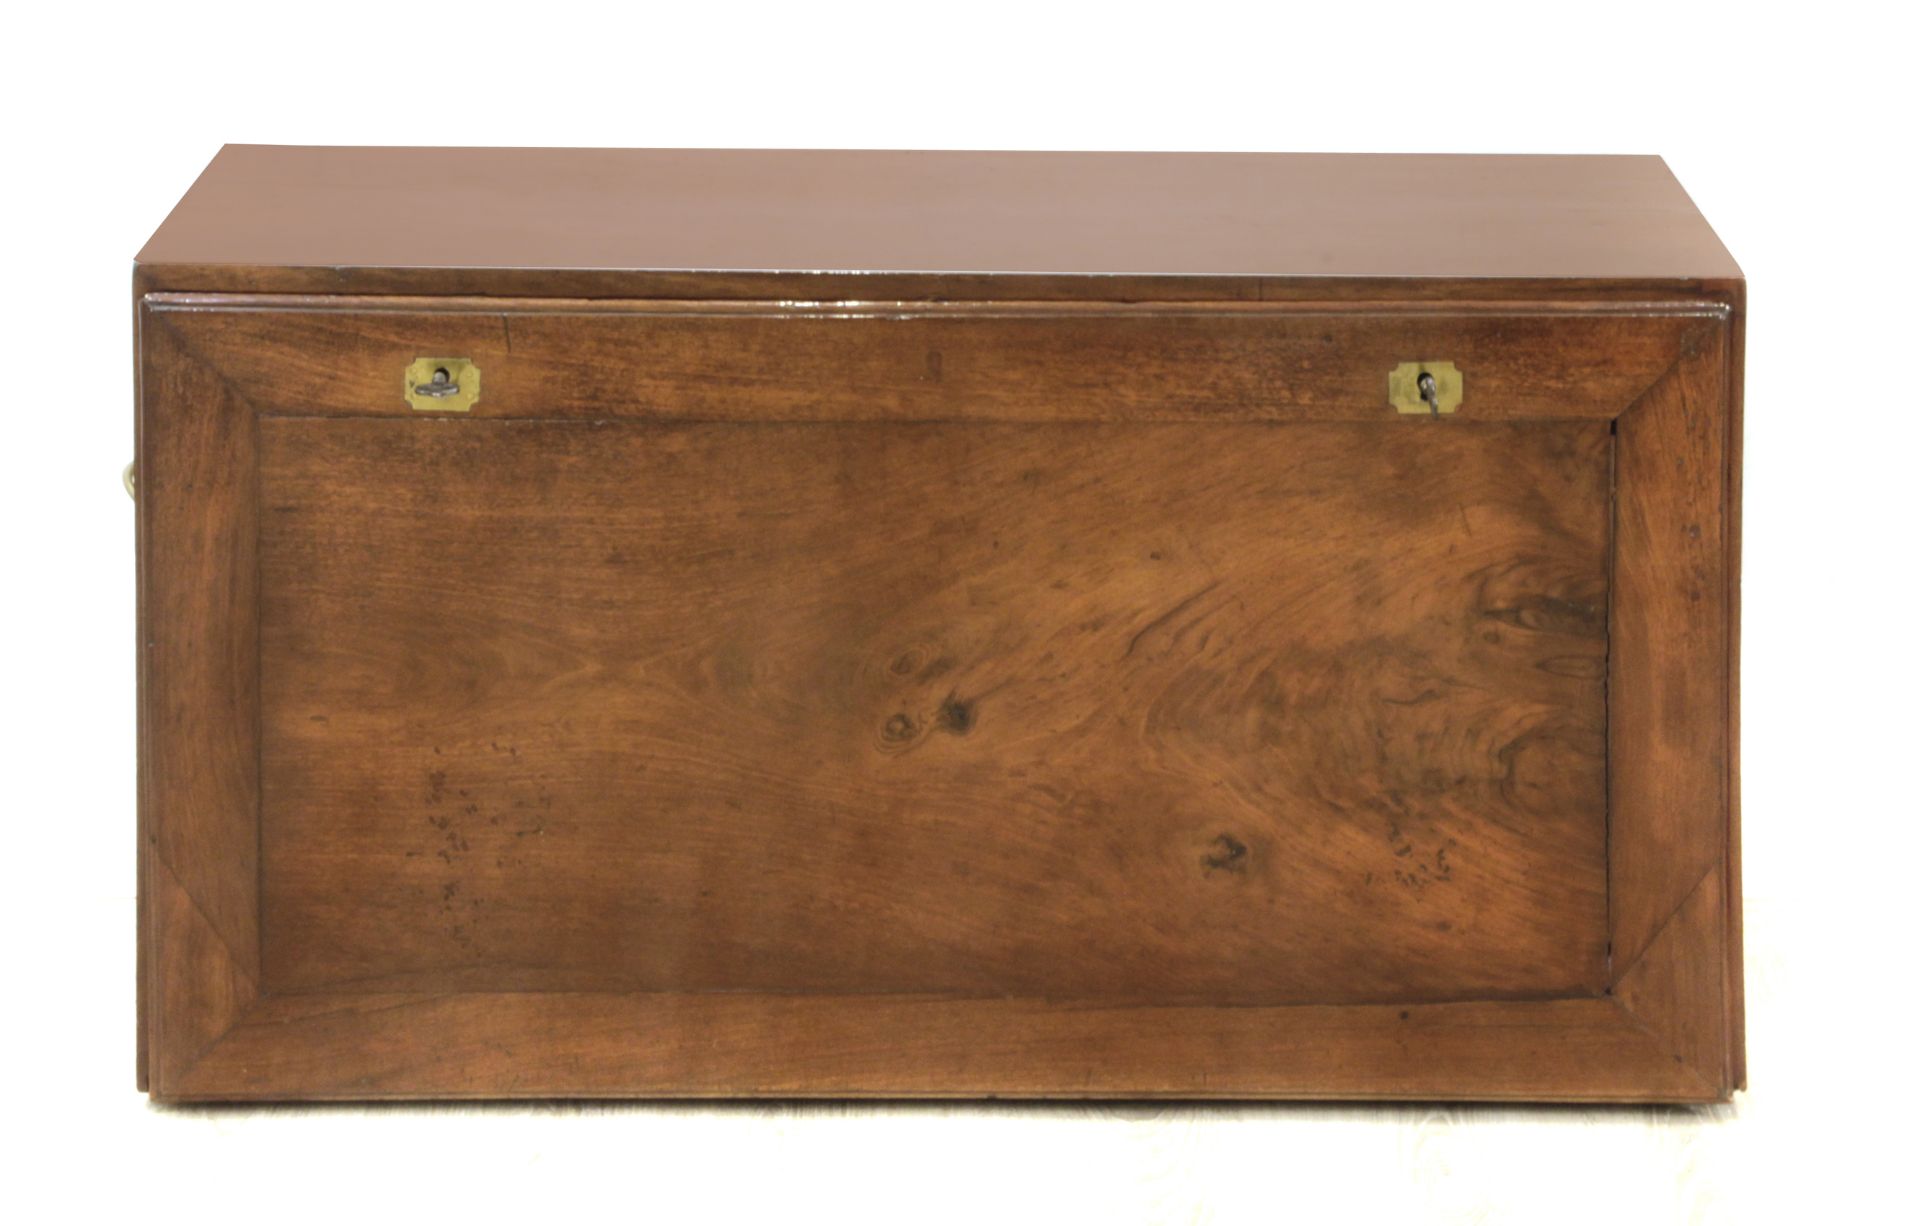 A 19th century Majorcan mahogany writing desk